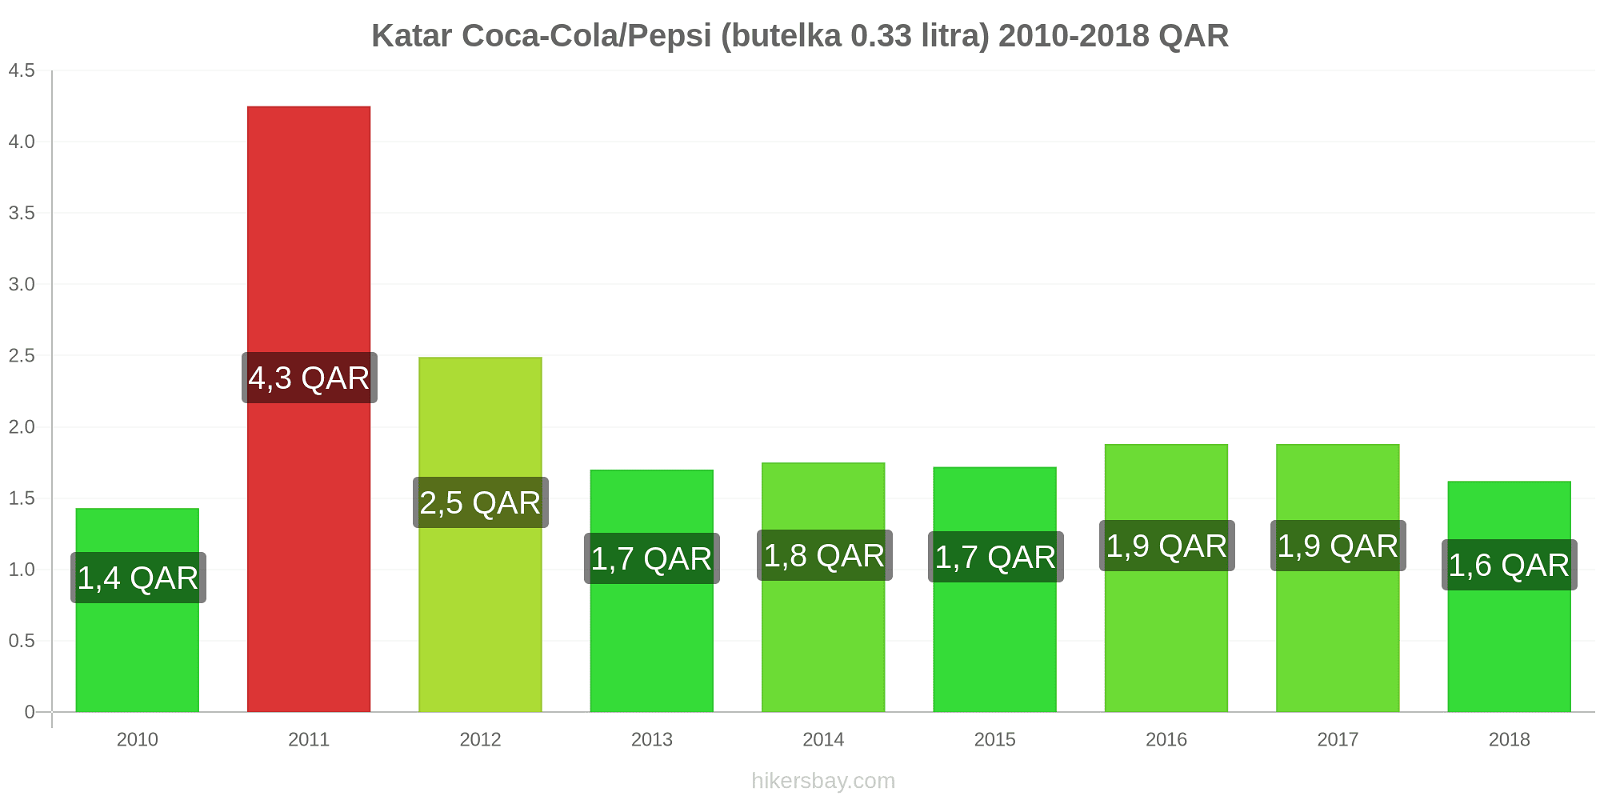 Katar zmiany cen Coca-Cola/Pepsi (butelka 0.33 litra) hikersbay.com